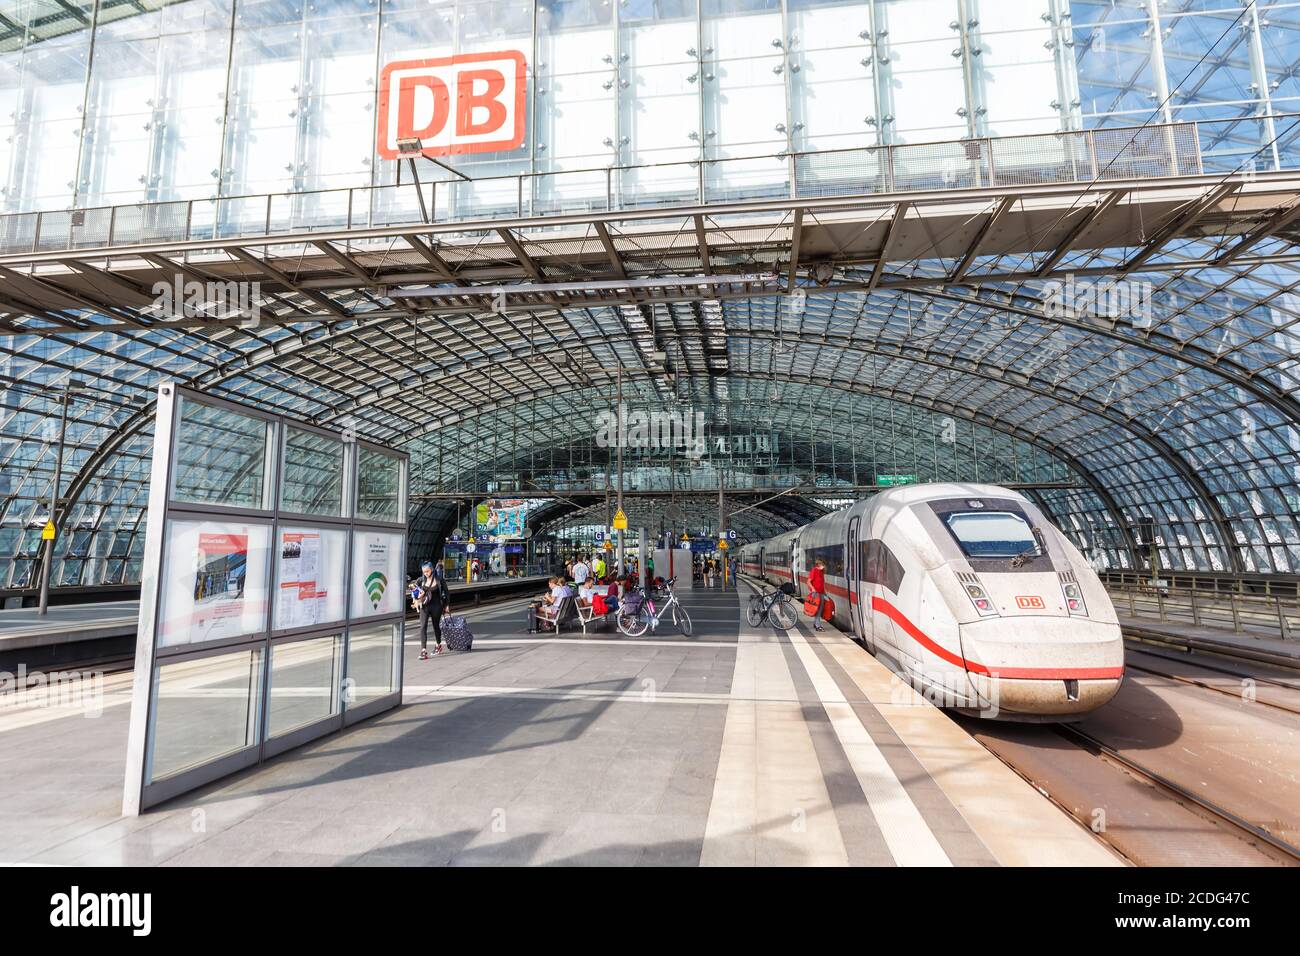 Berlino, Germania - 20 agosto 2020: Treno AD alta velocità ICE 4 alla stazione ferroviaria centrale di Berlino Hauptbahnhof Hbf in Germania. Foto Stock